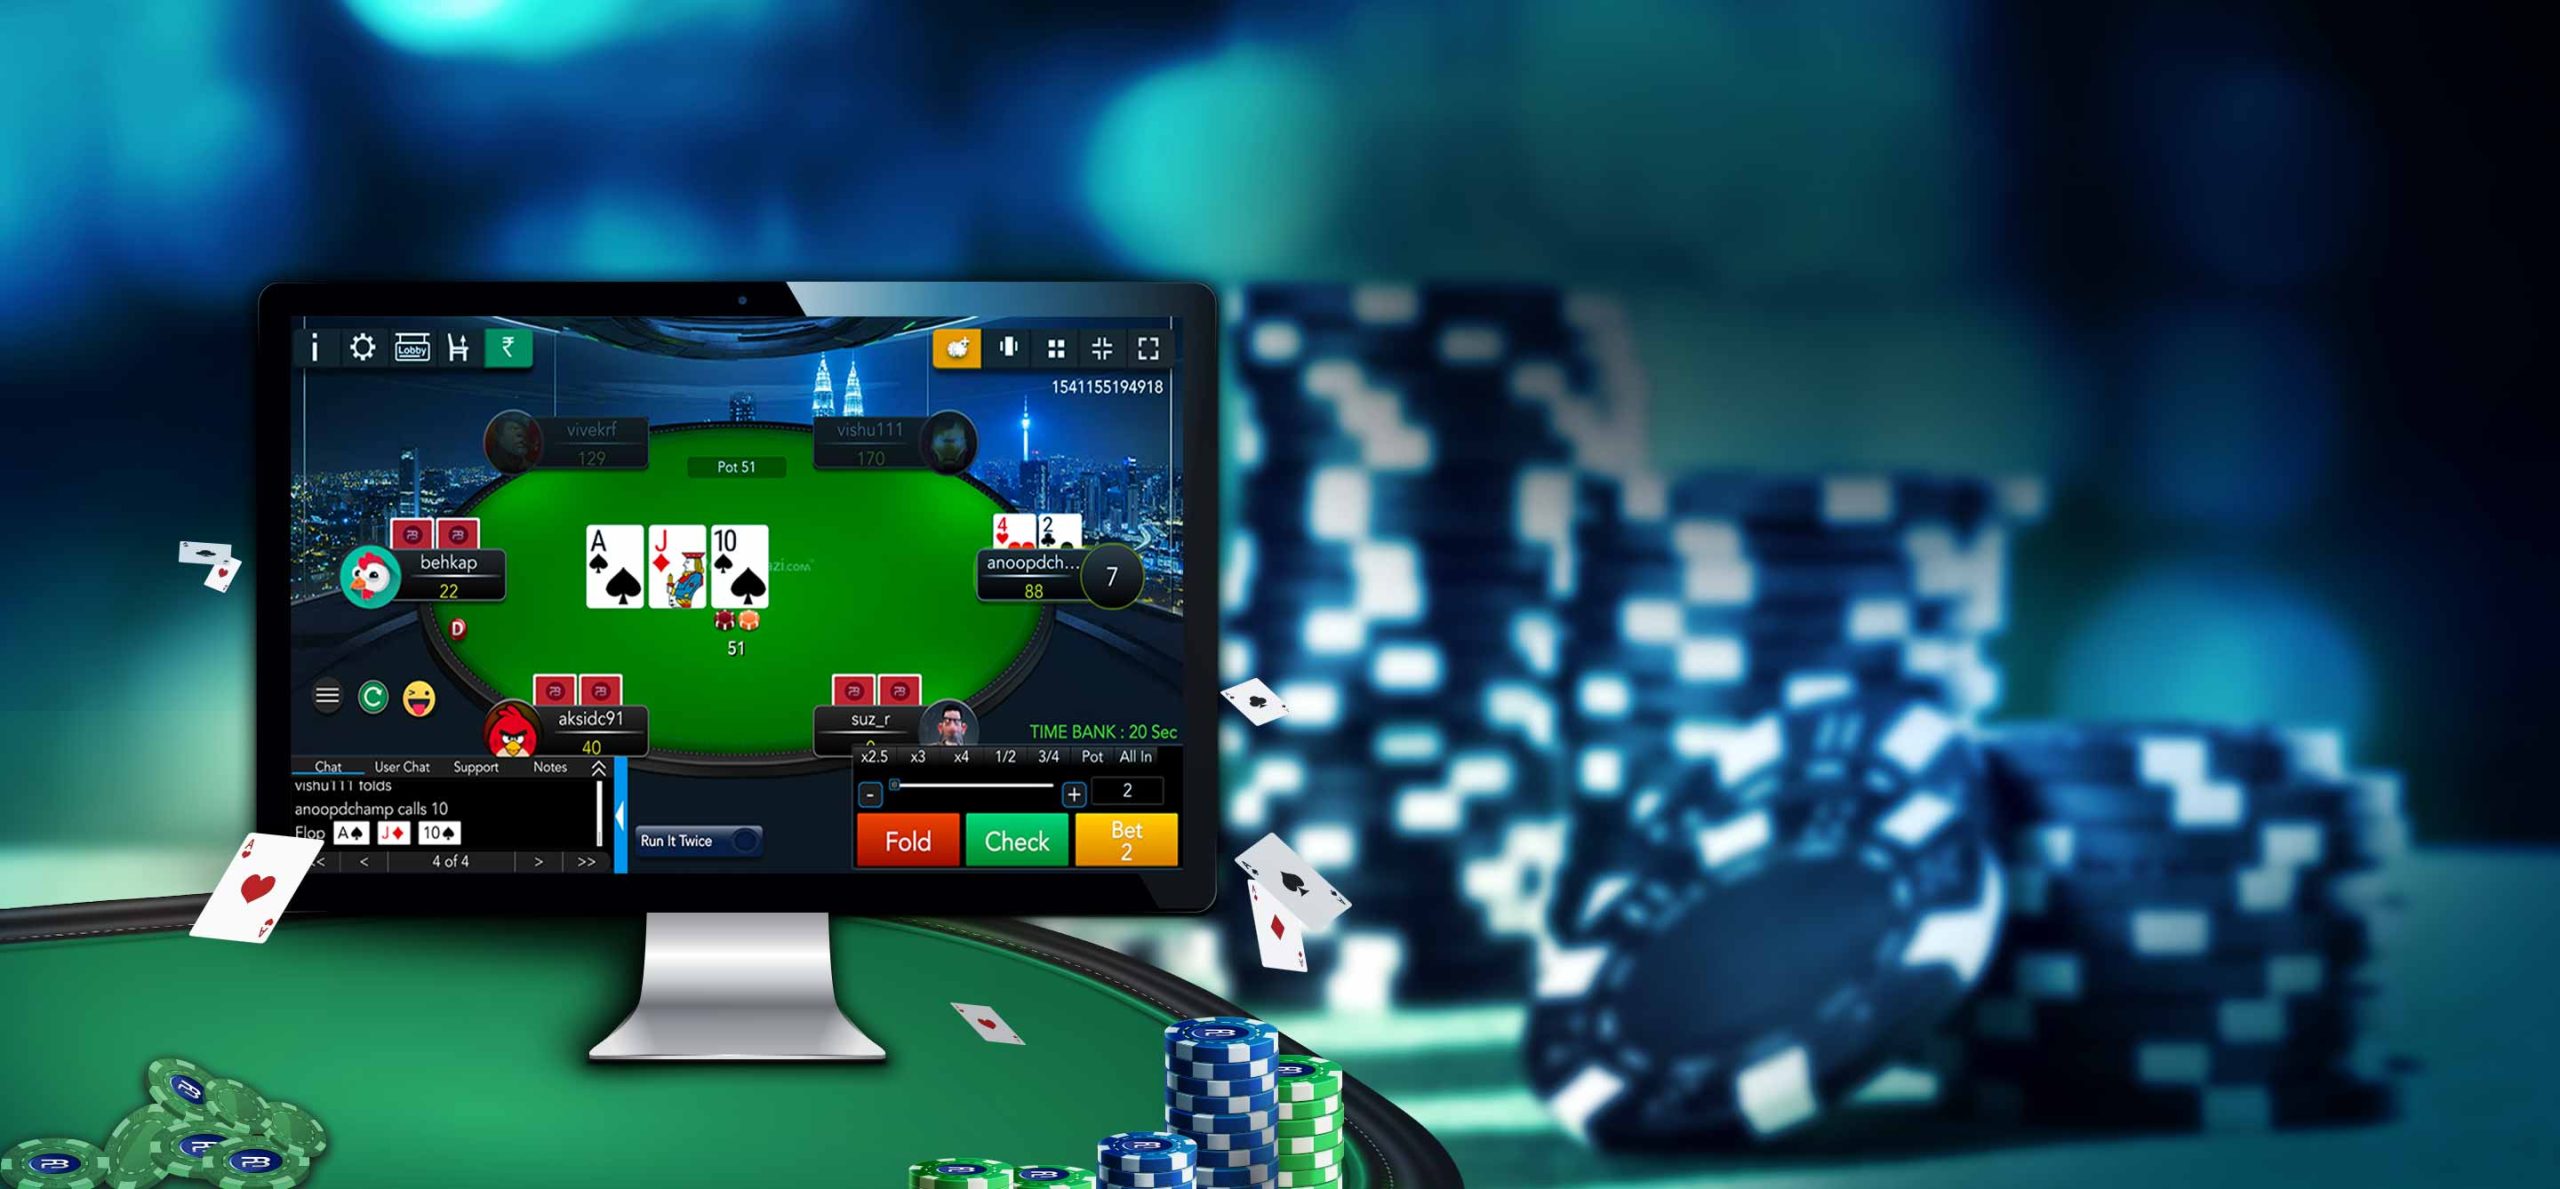 Kelebihan dan Kekurangan Dari Agen Judi Poker Online Terpercaya